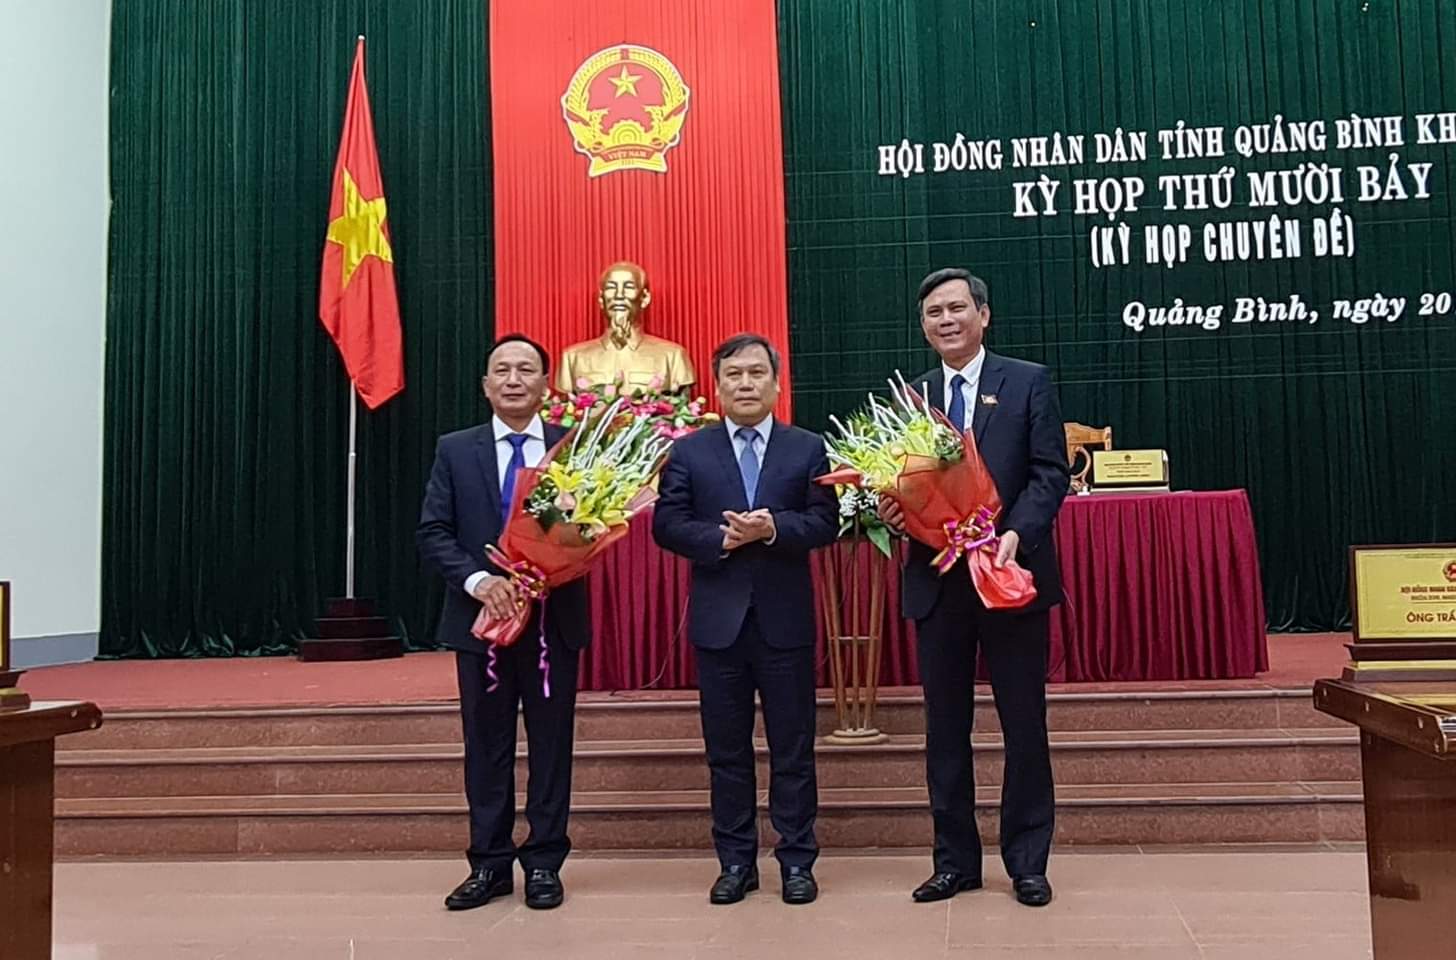 Chủ tịch UBND Quảng Bình: Chủ tịch UBND Quảng Bình đã đưa ra nhiều chính sách hợp lý và đưa Quảng Bình trở thành một trong những điểm đến du lịch hấp dẫn nhất Việt Nam. Tình hình kinh tế đang phát triển nhanh chóng và các dự án đầu tư thu hút đối tác nước ngoài được triển khai với tốc độ nhanh chóng.